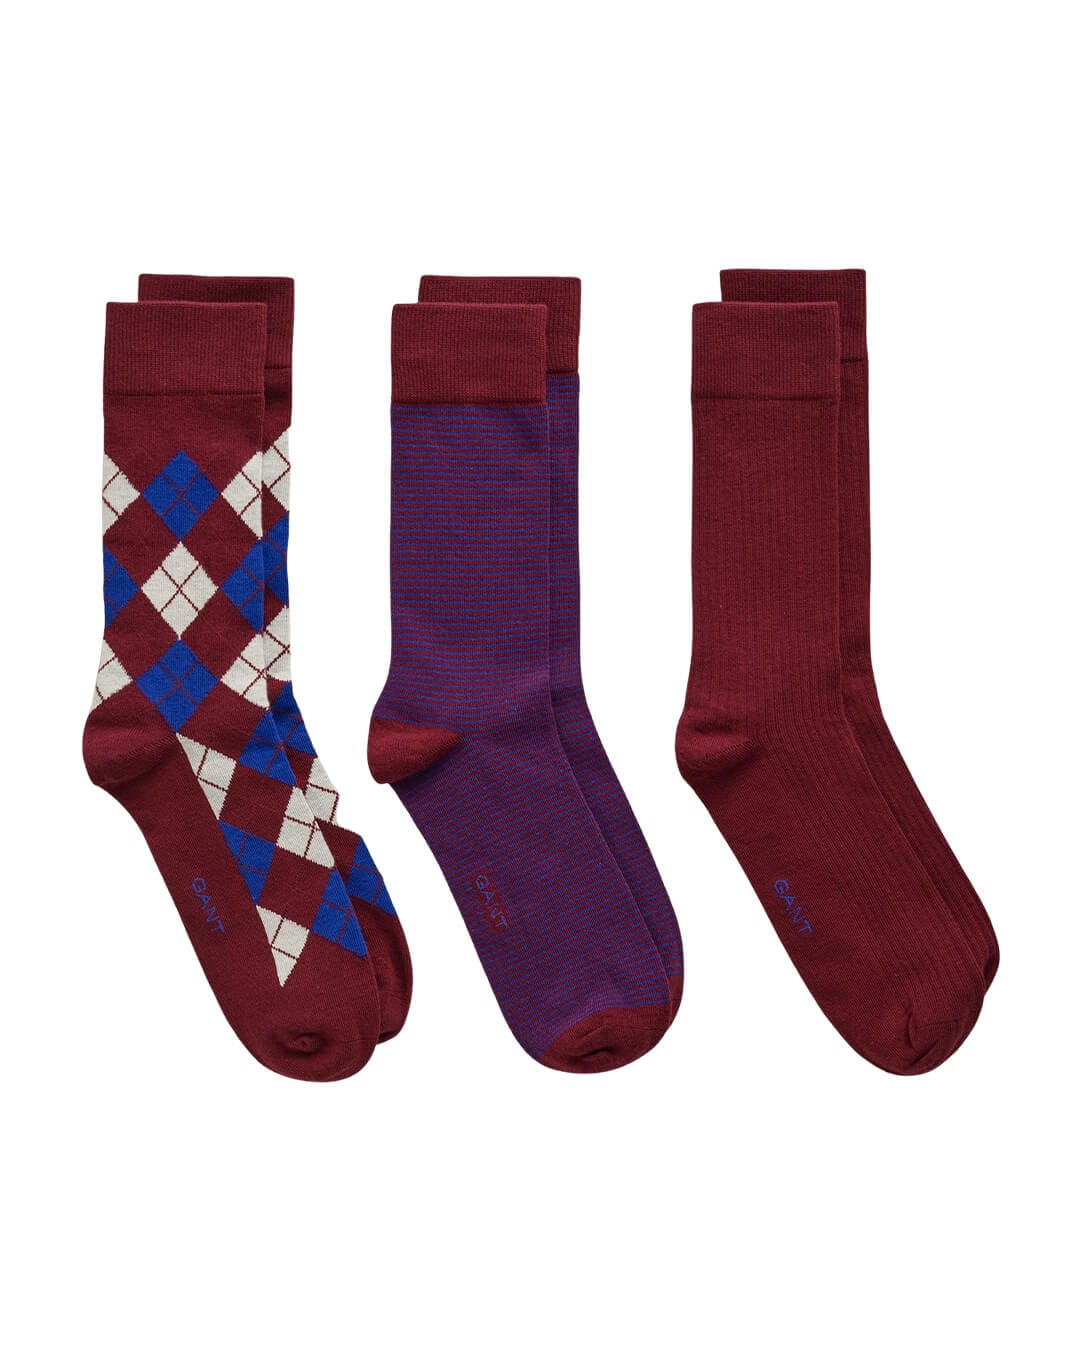 Gant Socks Gant Plumped Red 3-Pack Argyle Socks